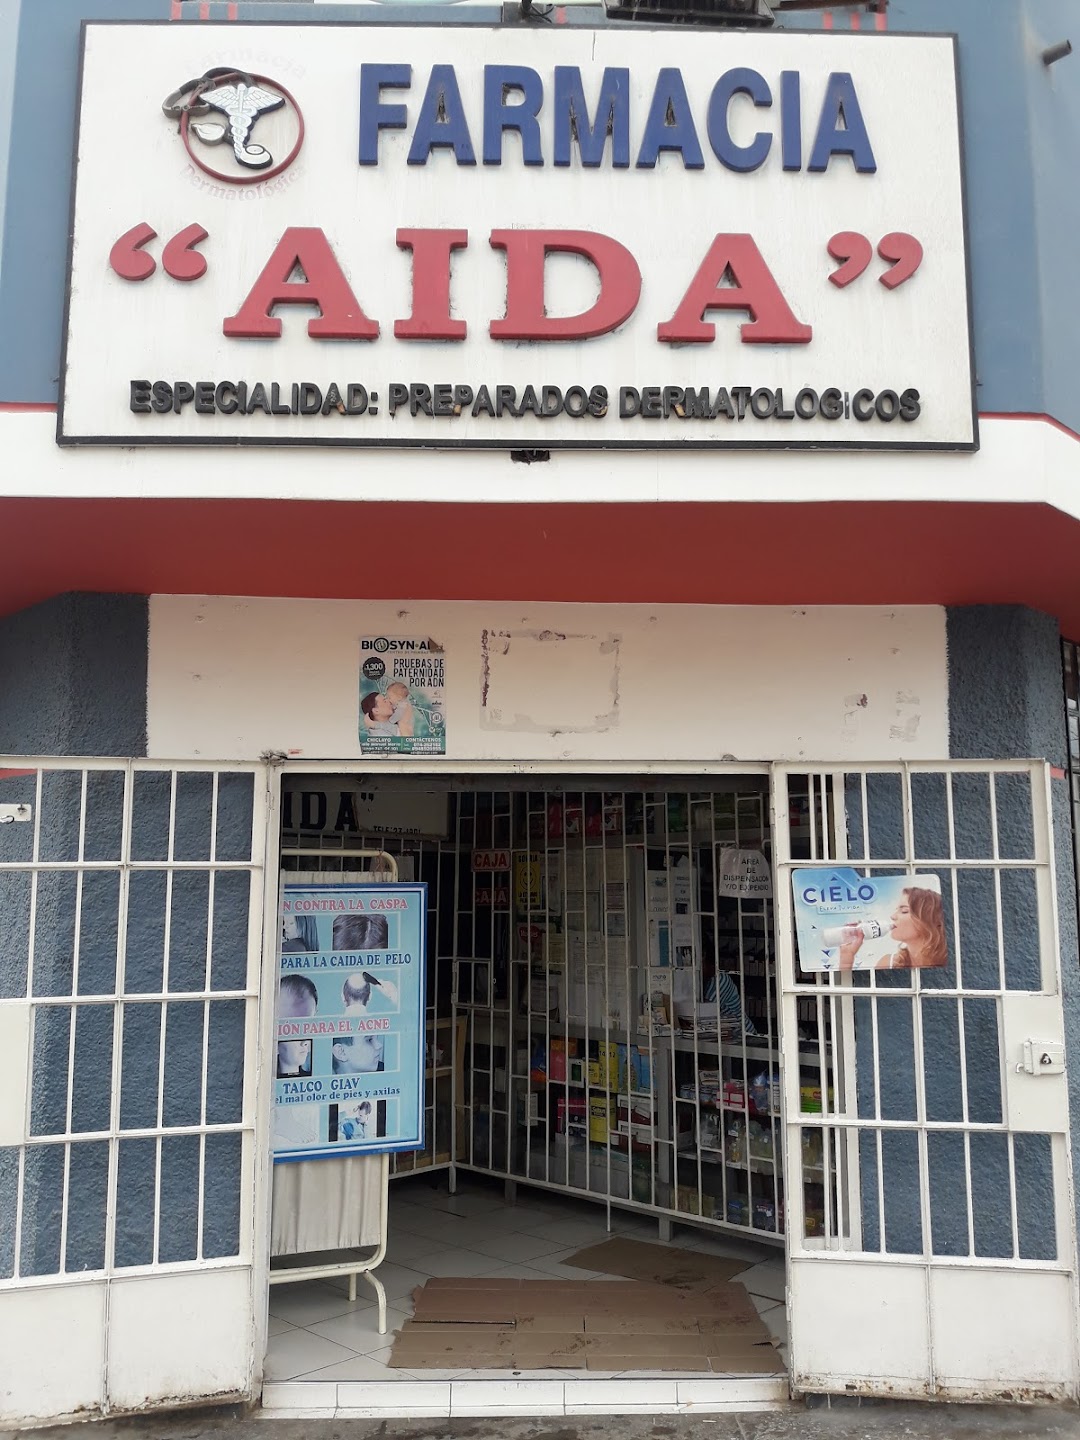 Farmacia Aida